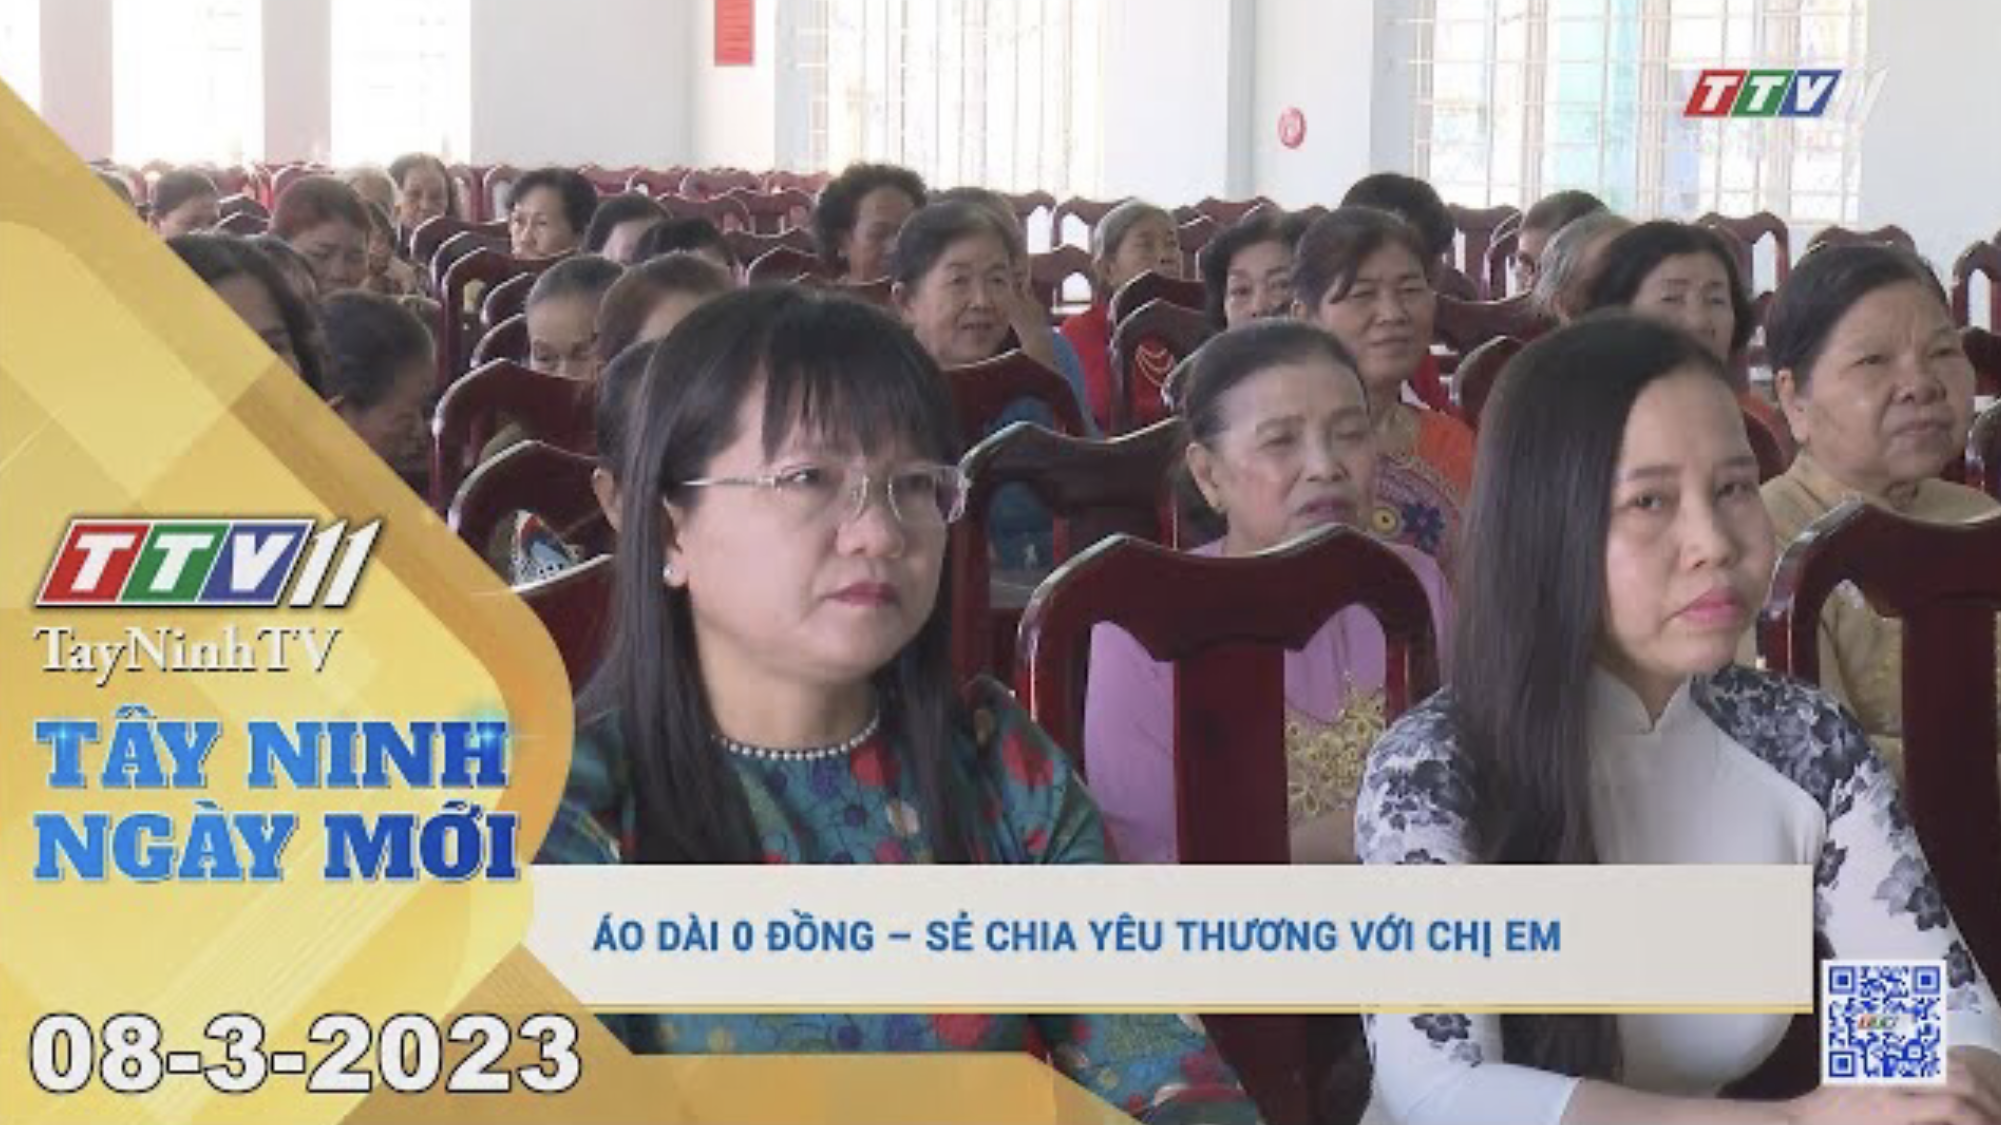 Tây Ninh ngày mới 08-3-2023 | Tin tức hôm nay | TayNinhTV